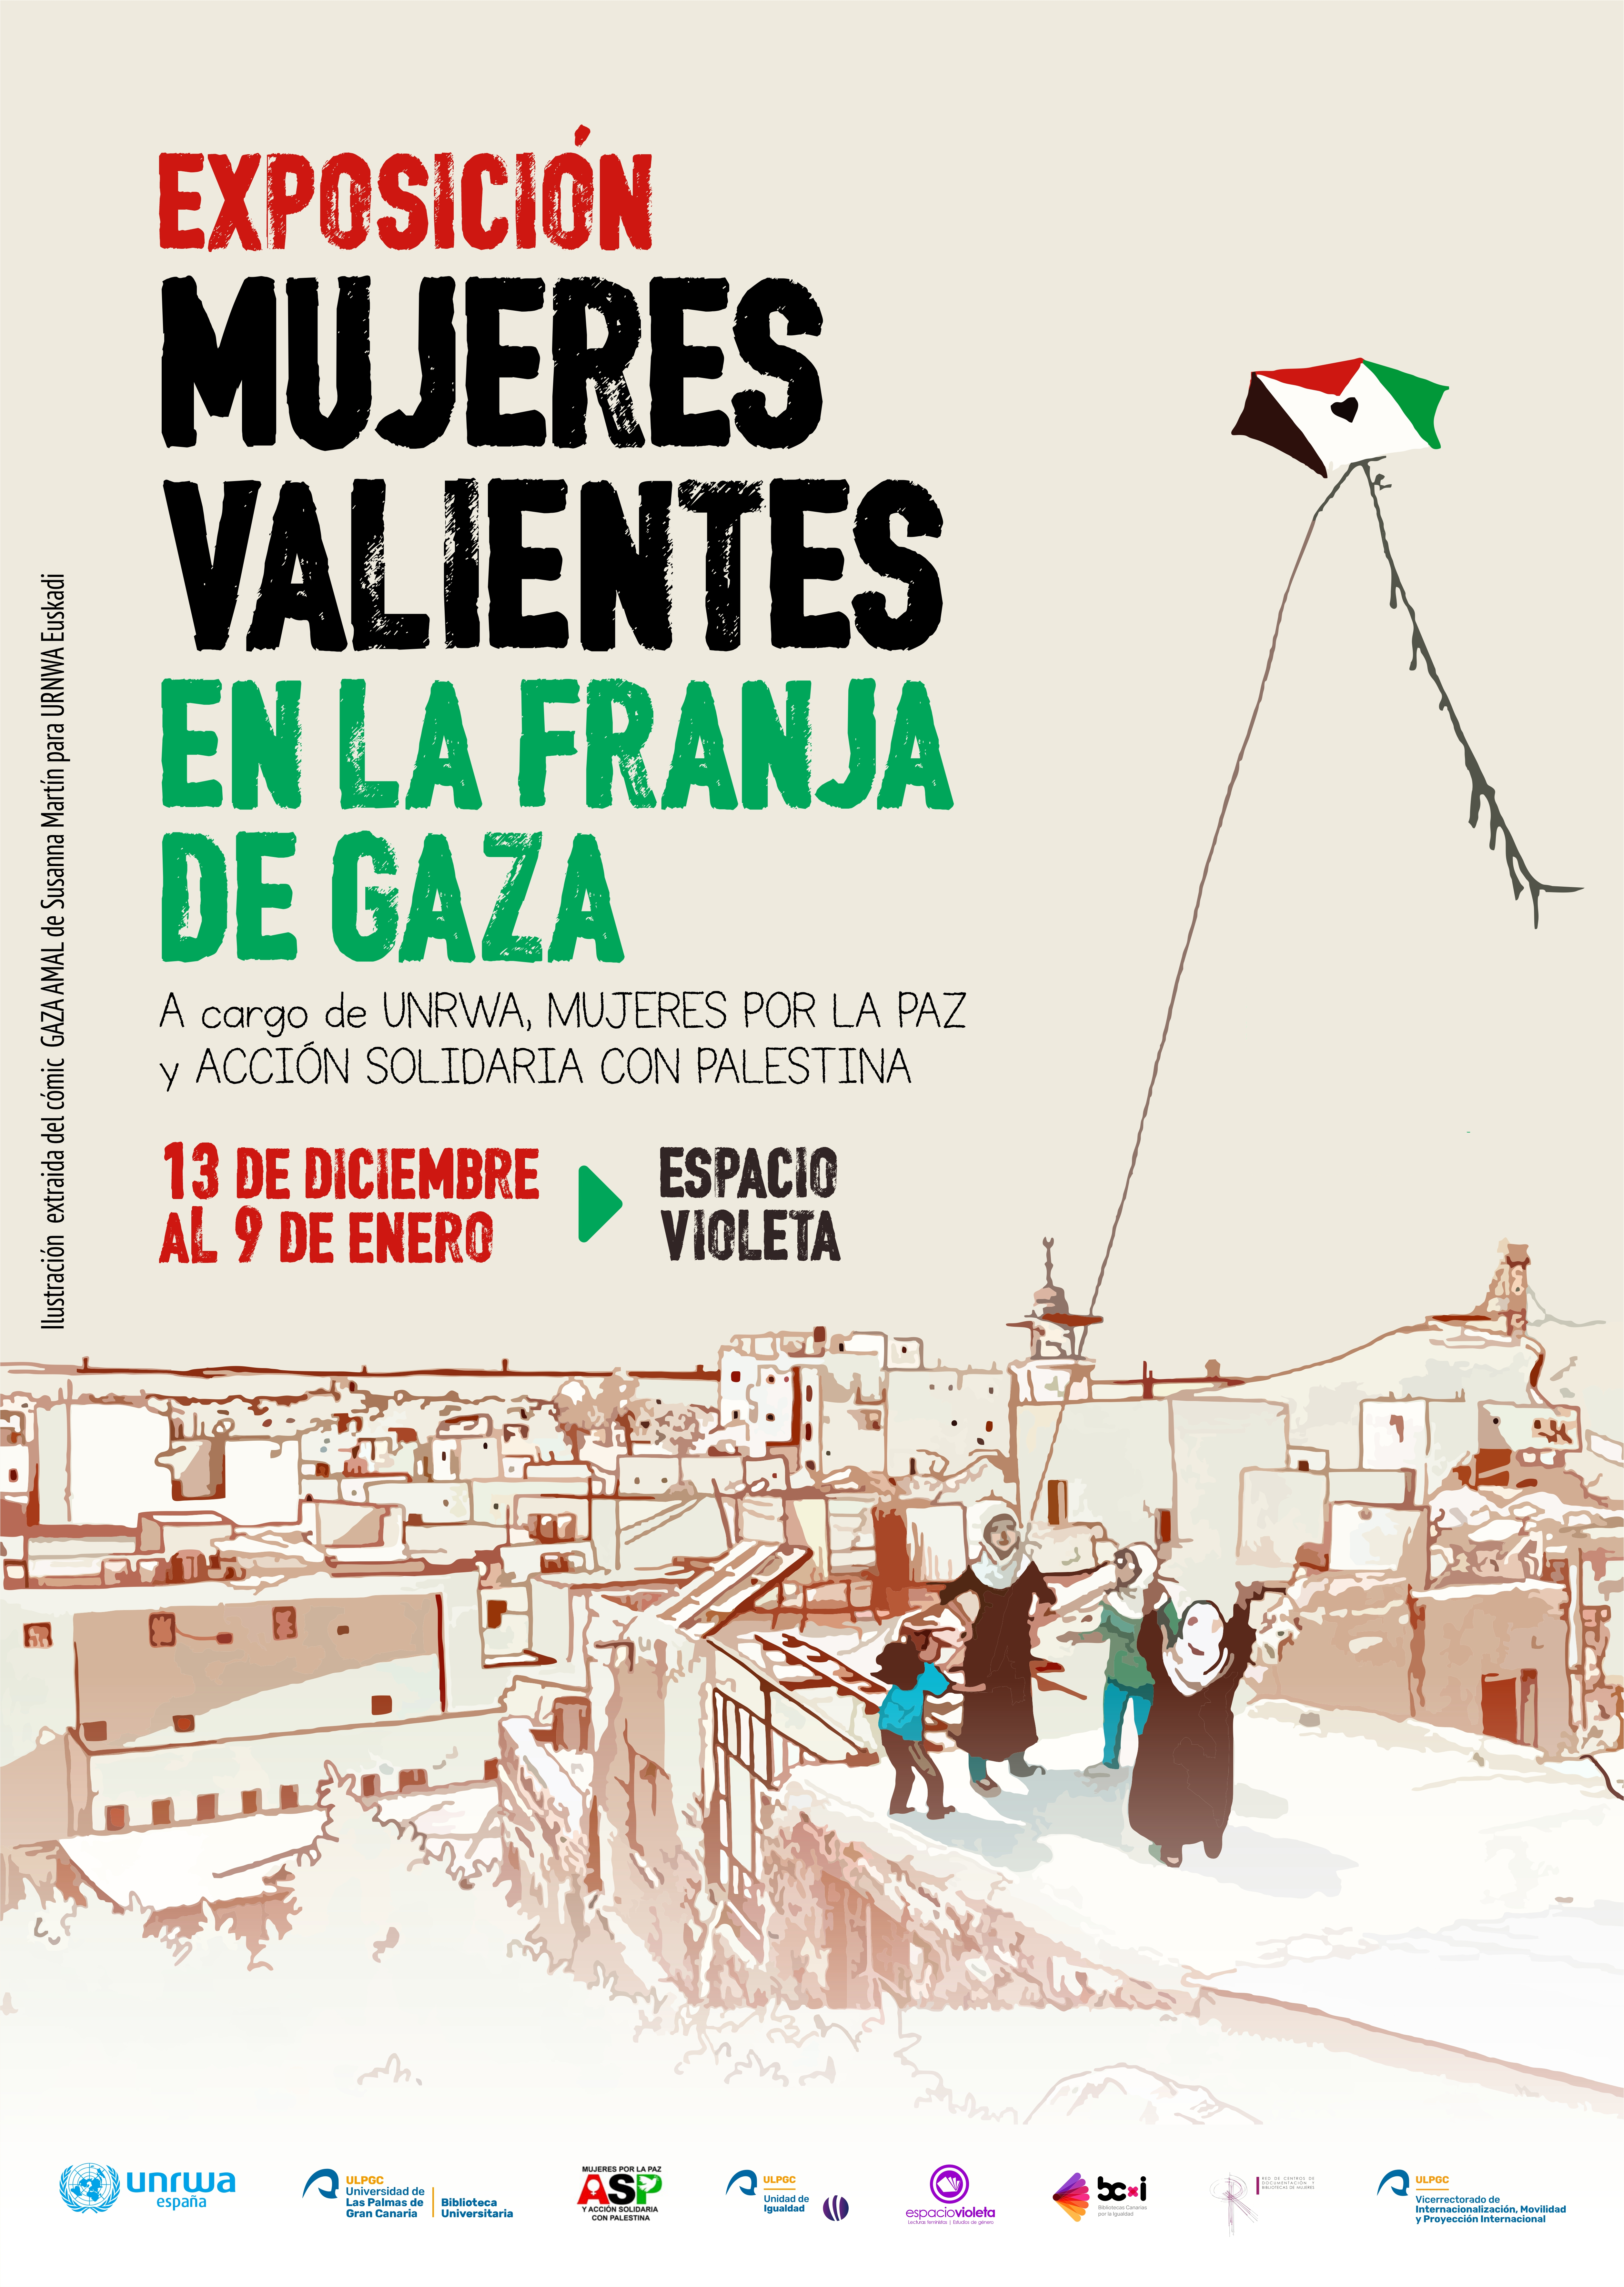 Cartel exposición de "Mujeres valientes en Gaza" con imagen dibujada de Gaza y tres personas en una azotea volando una cometa de la bandera palestina